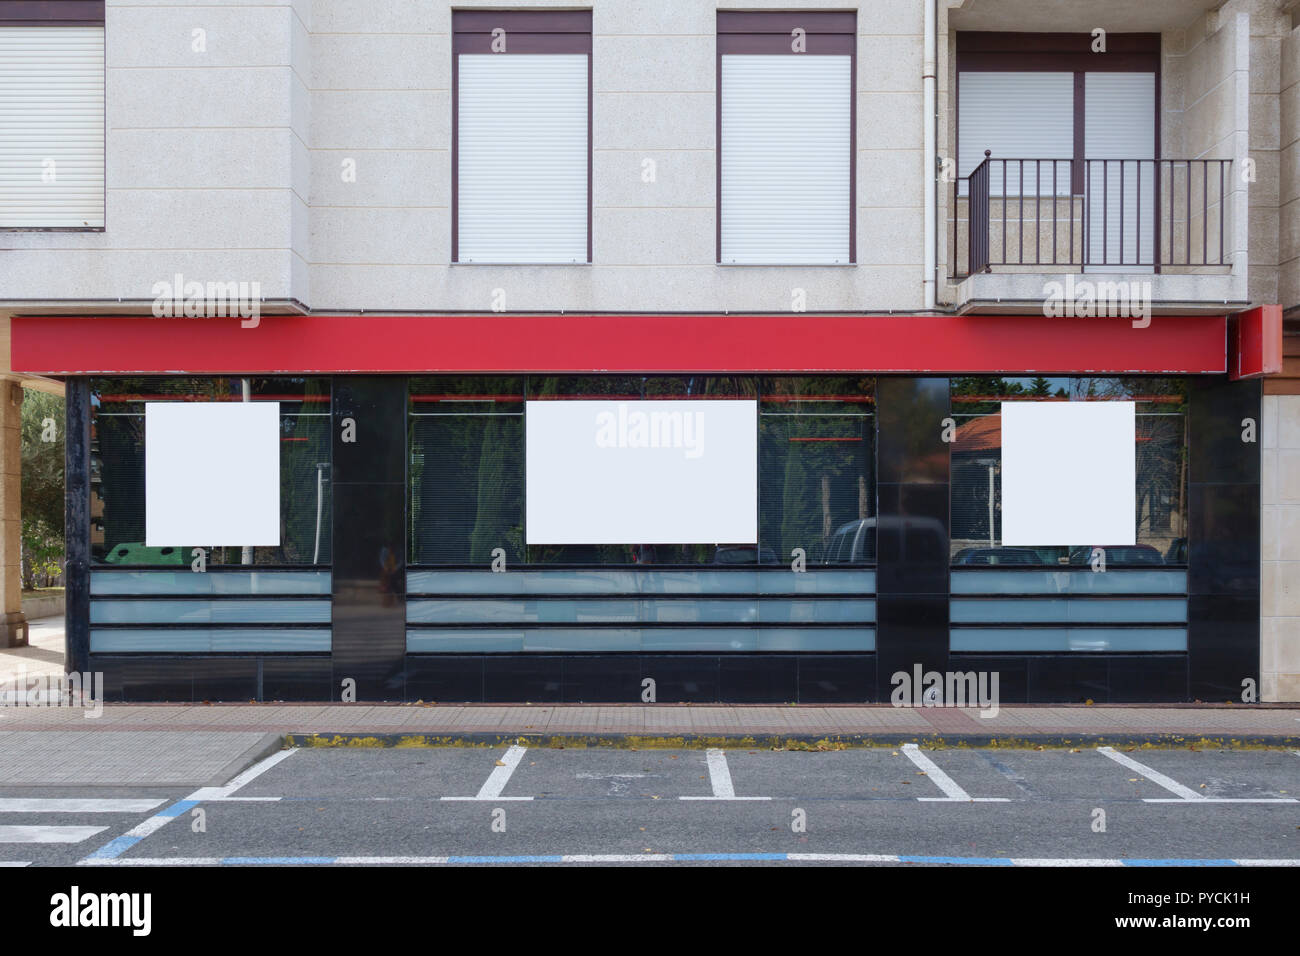 Ufficio bancario con tre cartelloni vuoto mock up per una pubblicità gratuita Foto Stock